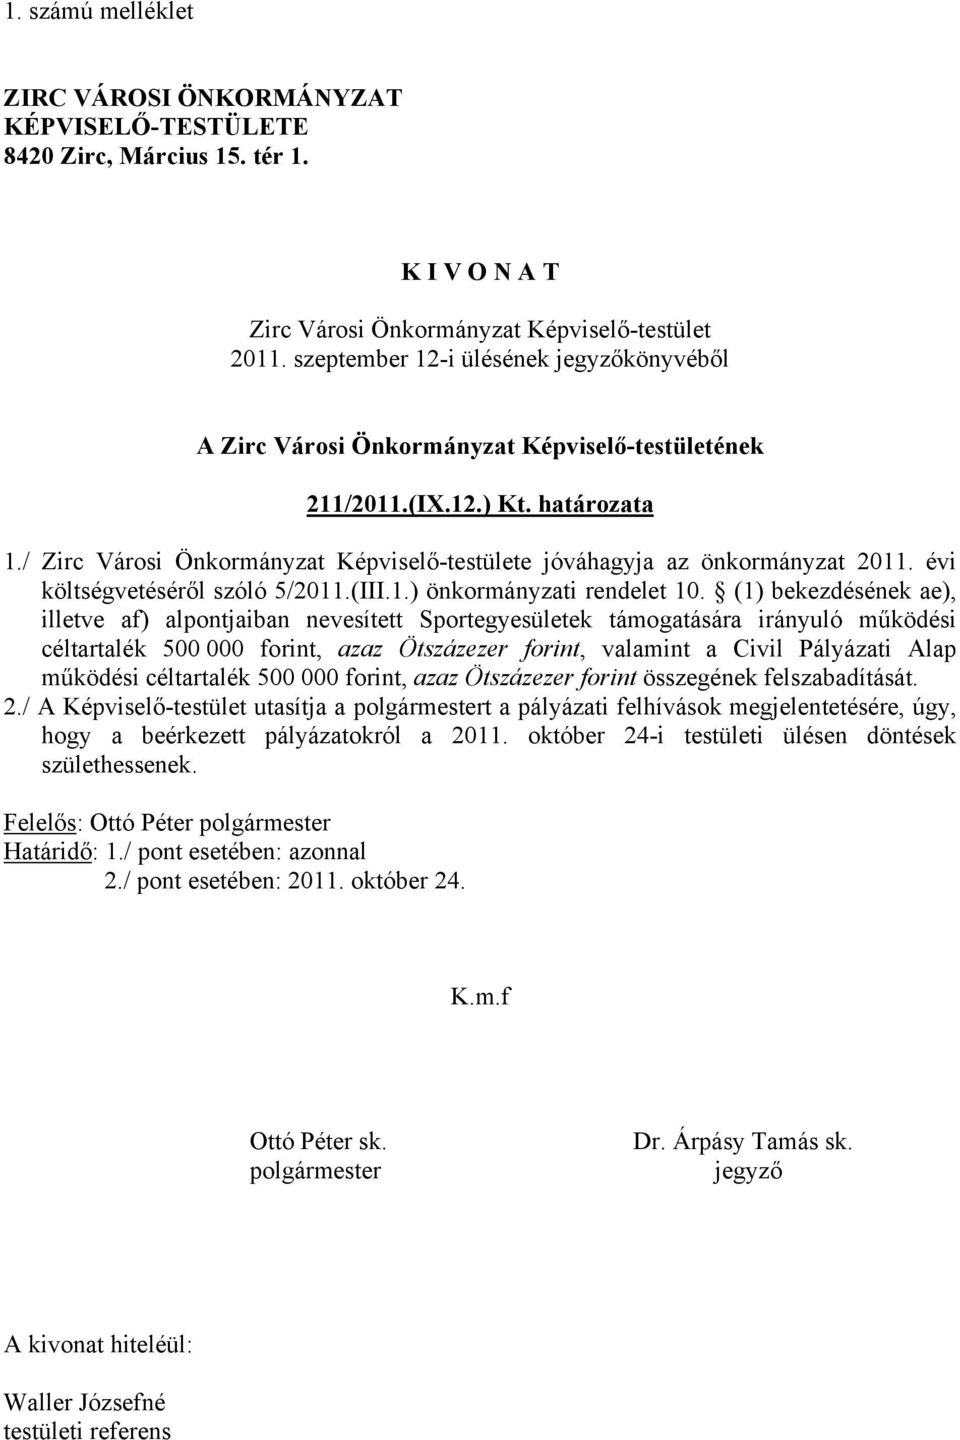 / Zirc Városi Önkormányzat Képviselő-testülete jóváhagyja az önkormányzat 2011. évi költségvetéséről szóló 5/2011.(III.1.) önkormányzati rendelet 10.